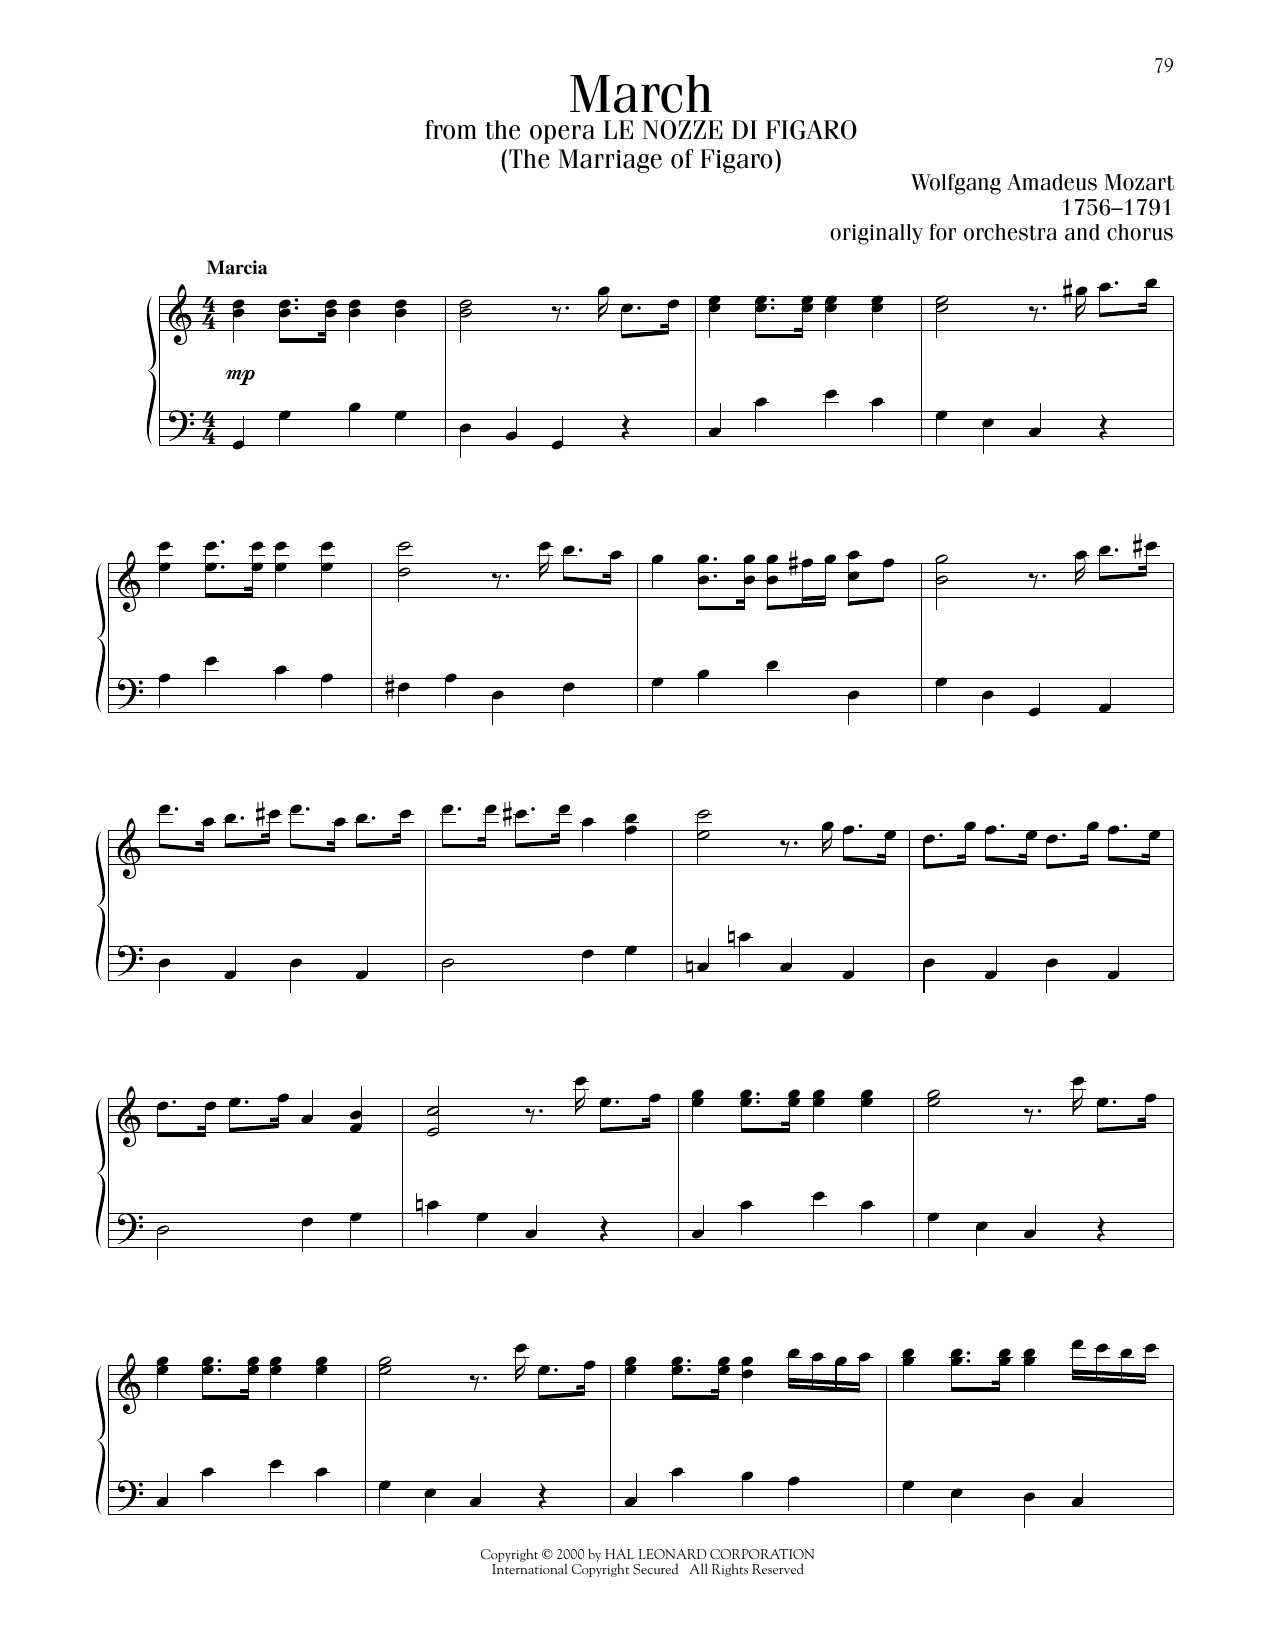 Wolfgang Amadeus Mozart March sheet music notes printable PDF score